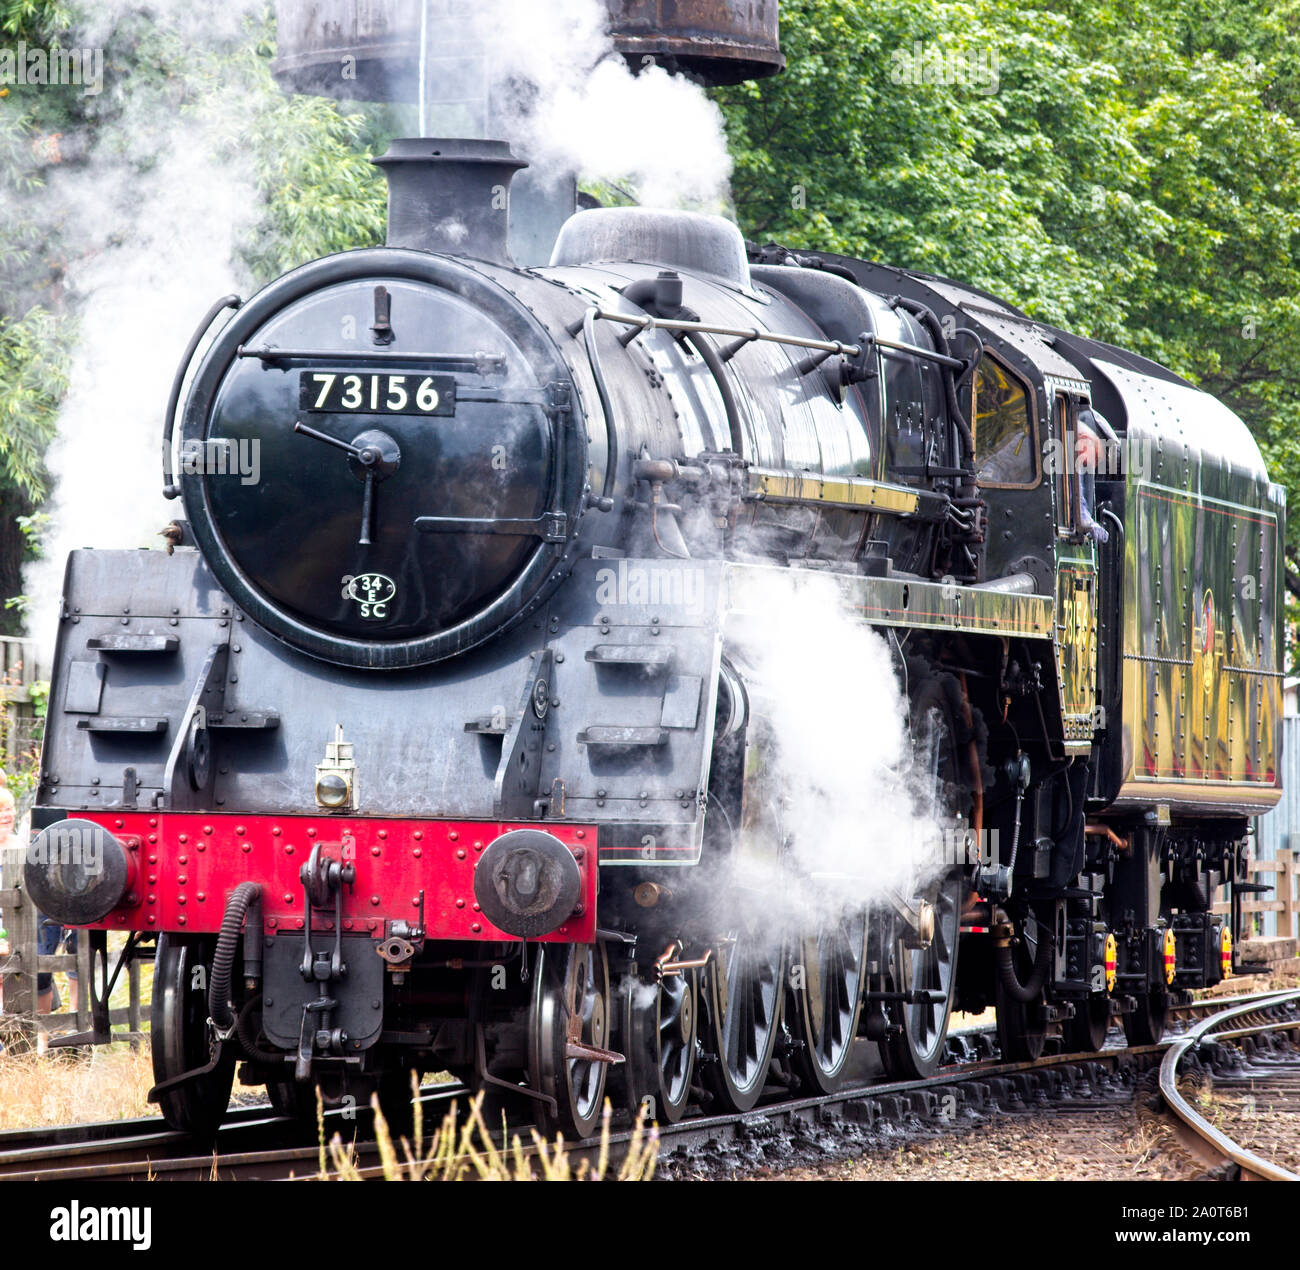 73156, une classe standard BR 5 locomotive à vapeur machine à vapeur à proximité de Loughborough gare sur la Great Central Railway, Leicestershire, Angleterre, Royaume-Uni. Banque D'Images